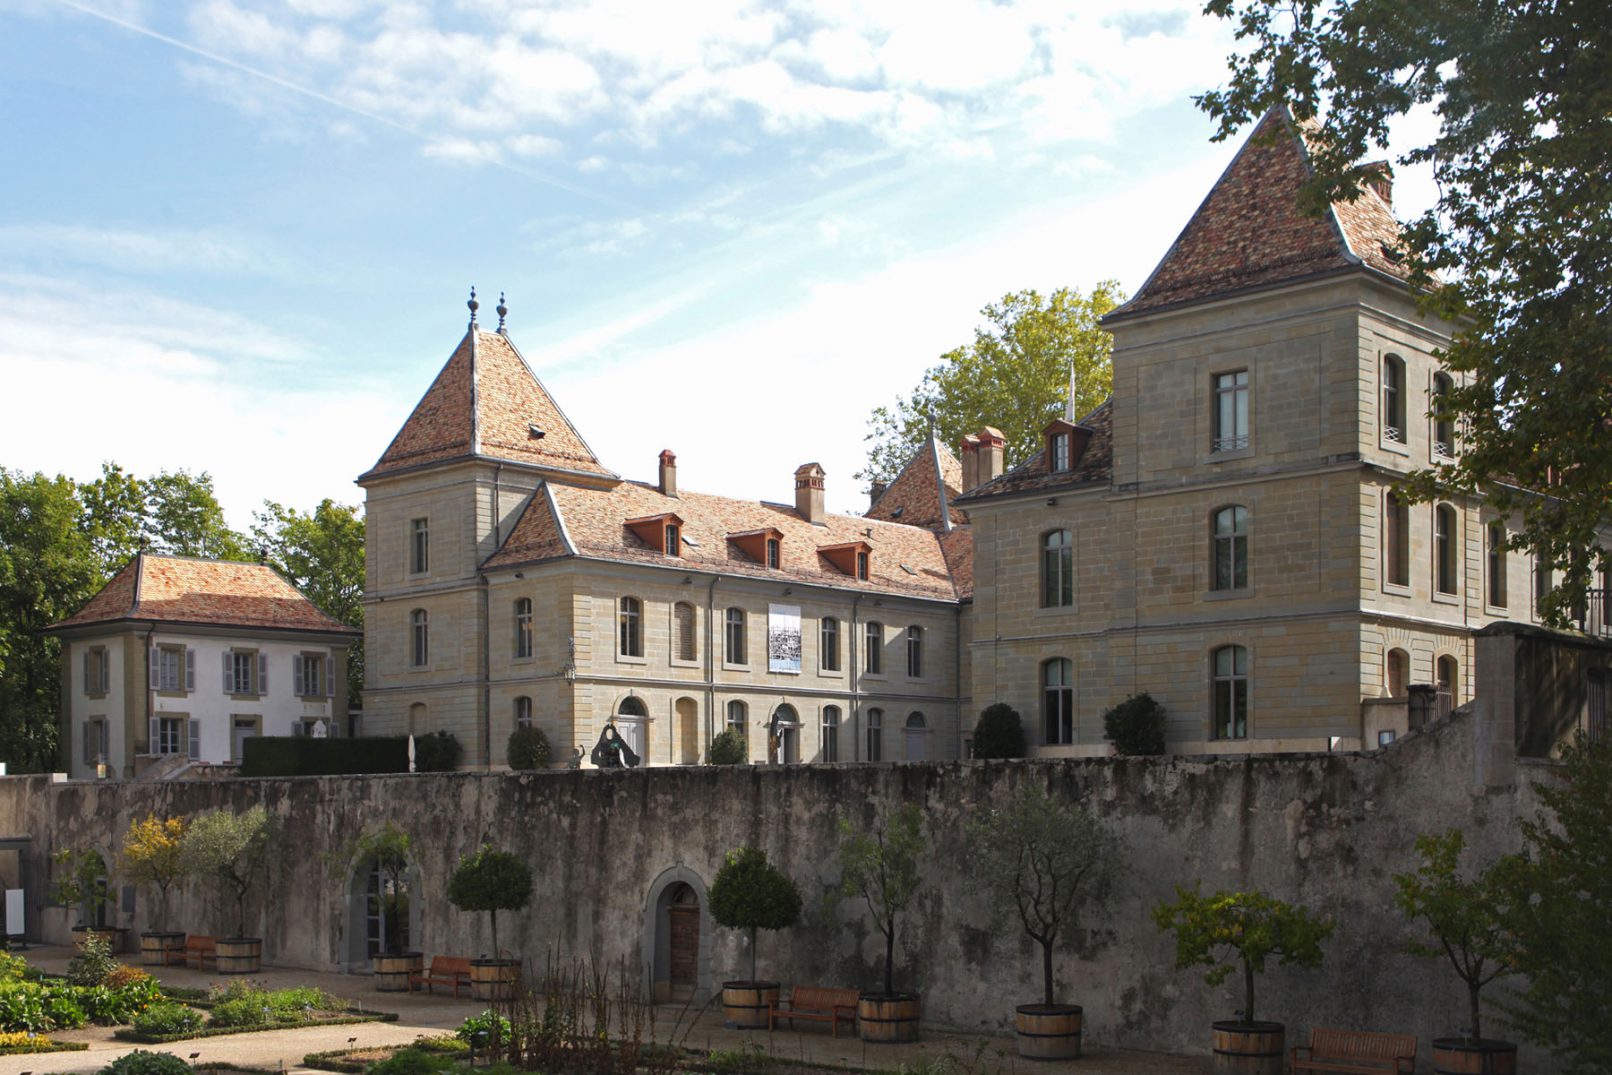 Rénovation et travaux lié à la sécurité du Château de Prangins, vidéo surveillance, interphone. Travaux d'architecte réalisé depuis Genève.